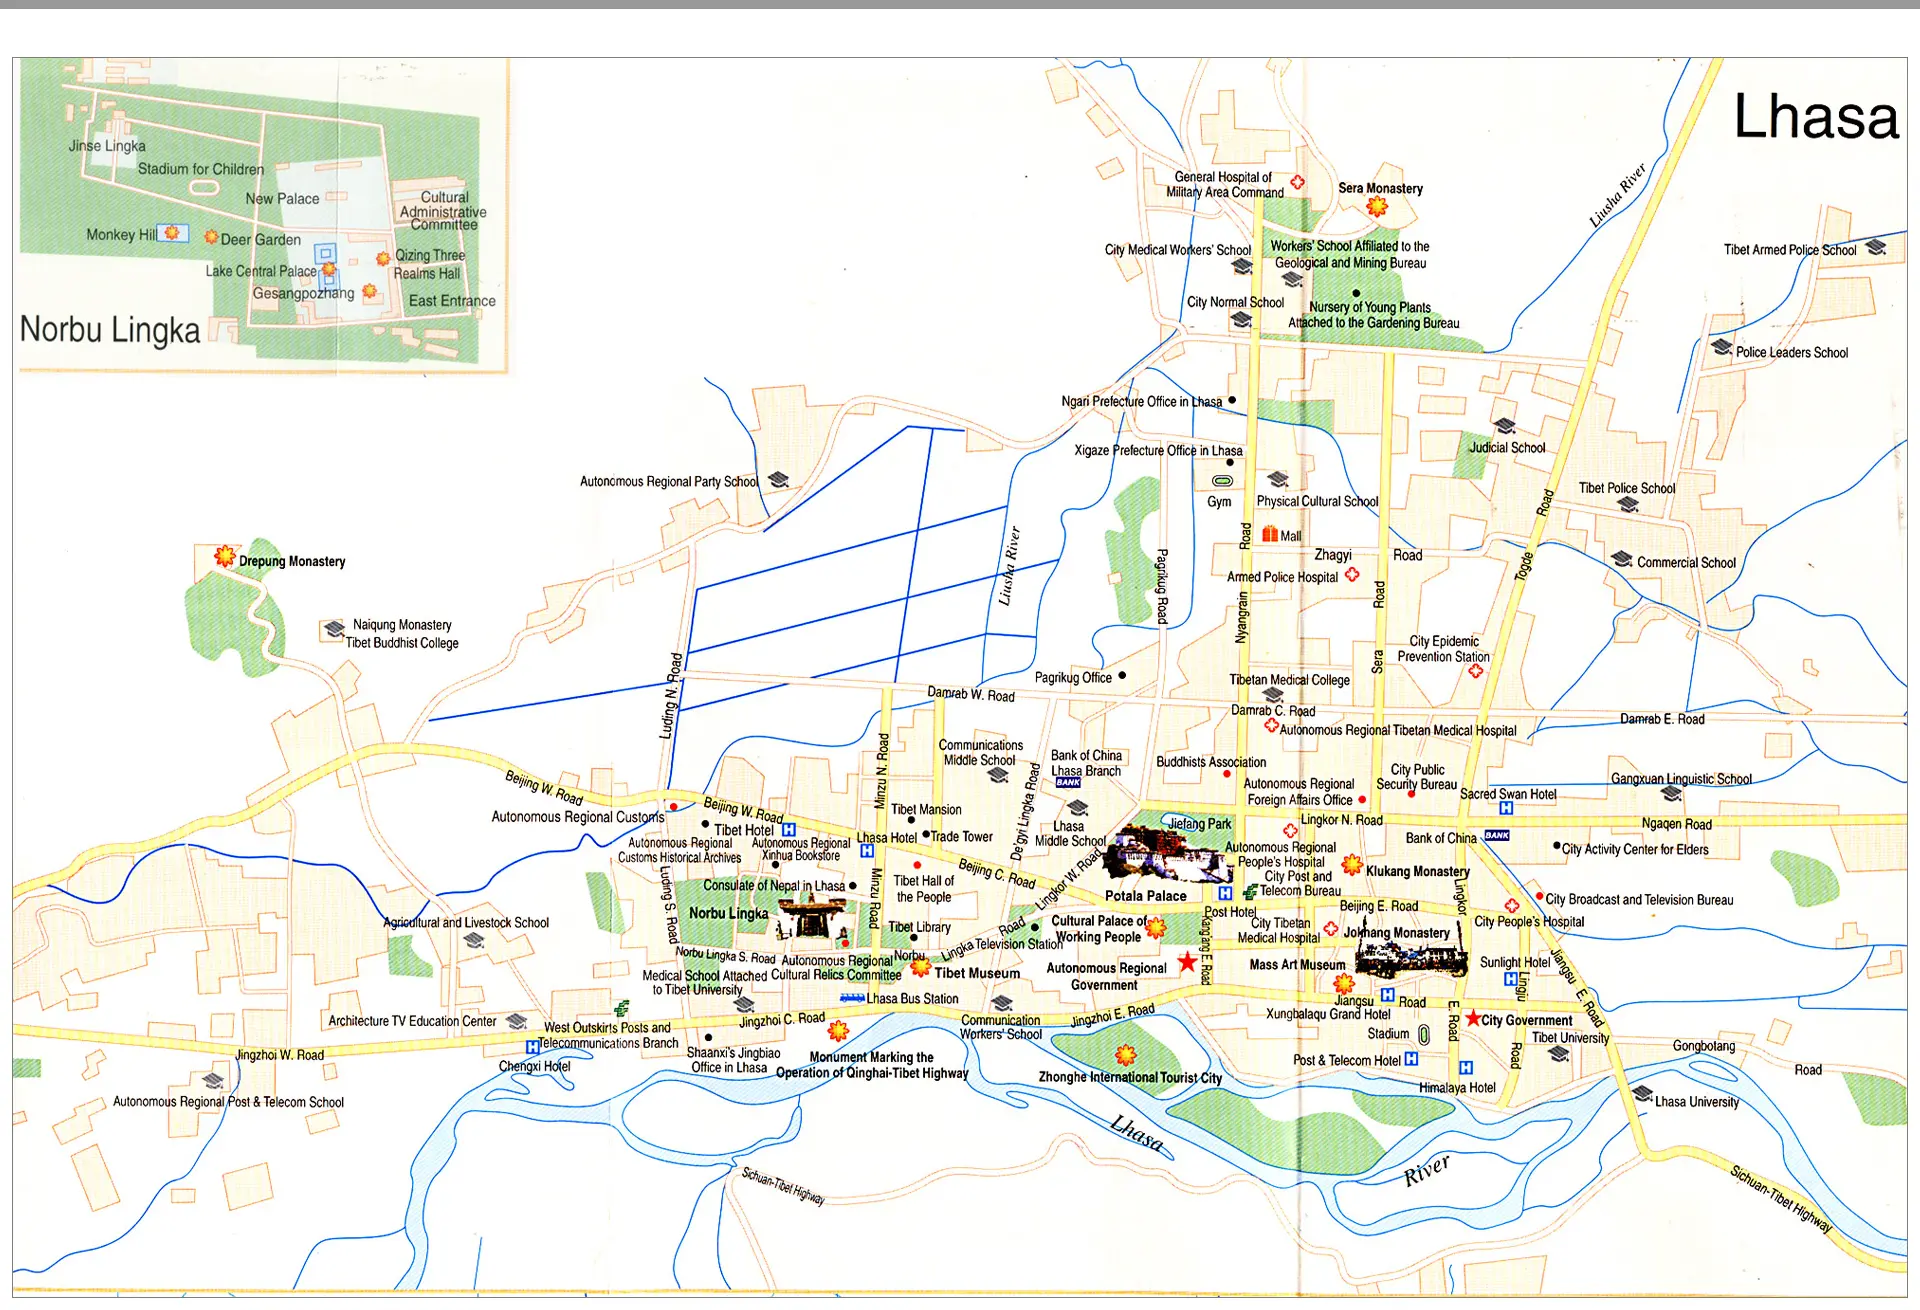 Lhasa, Tibet city tourist map